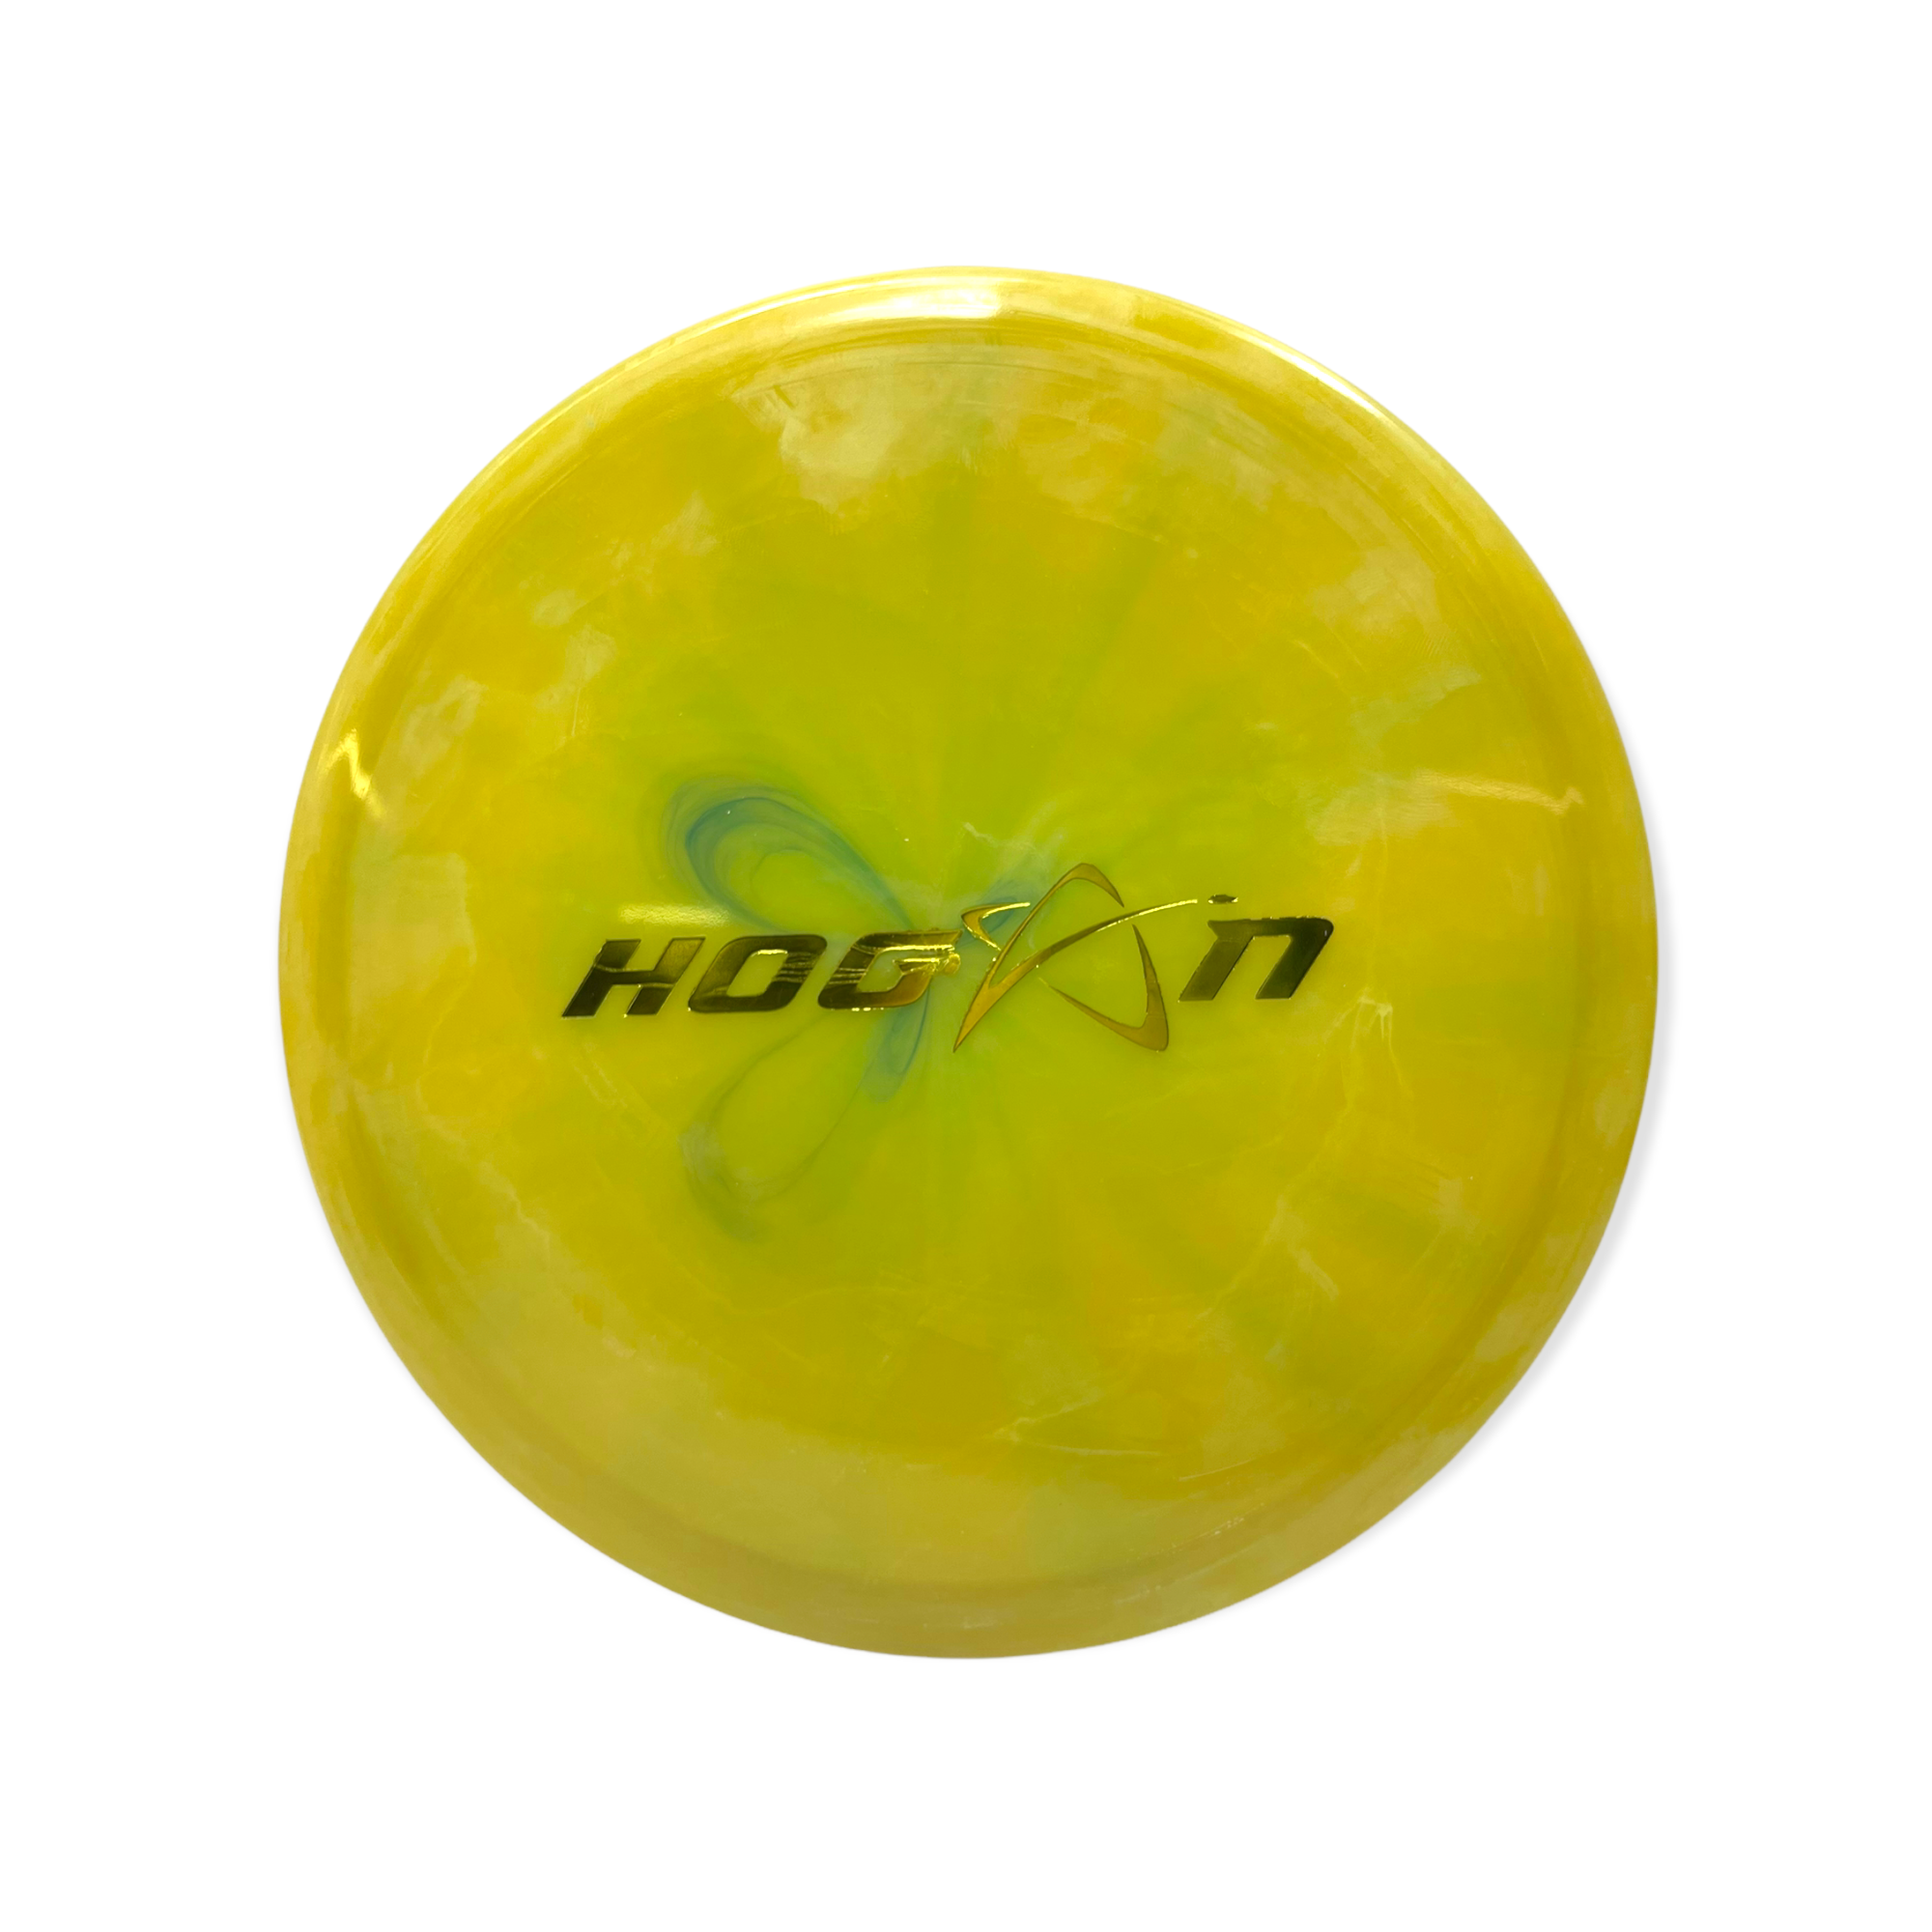 Hogan A1 Spectrum 400